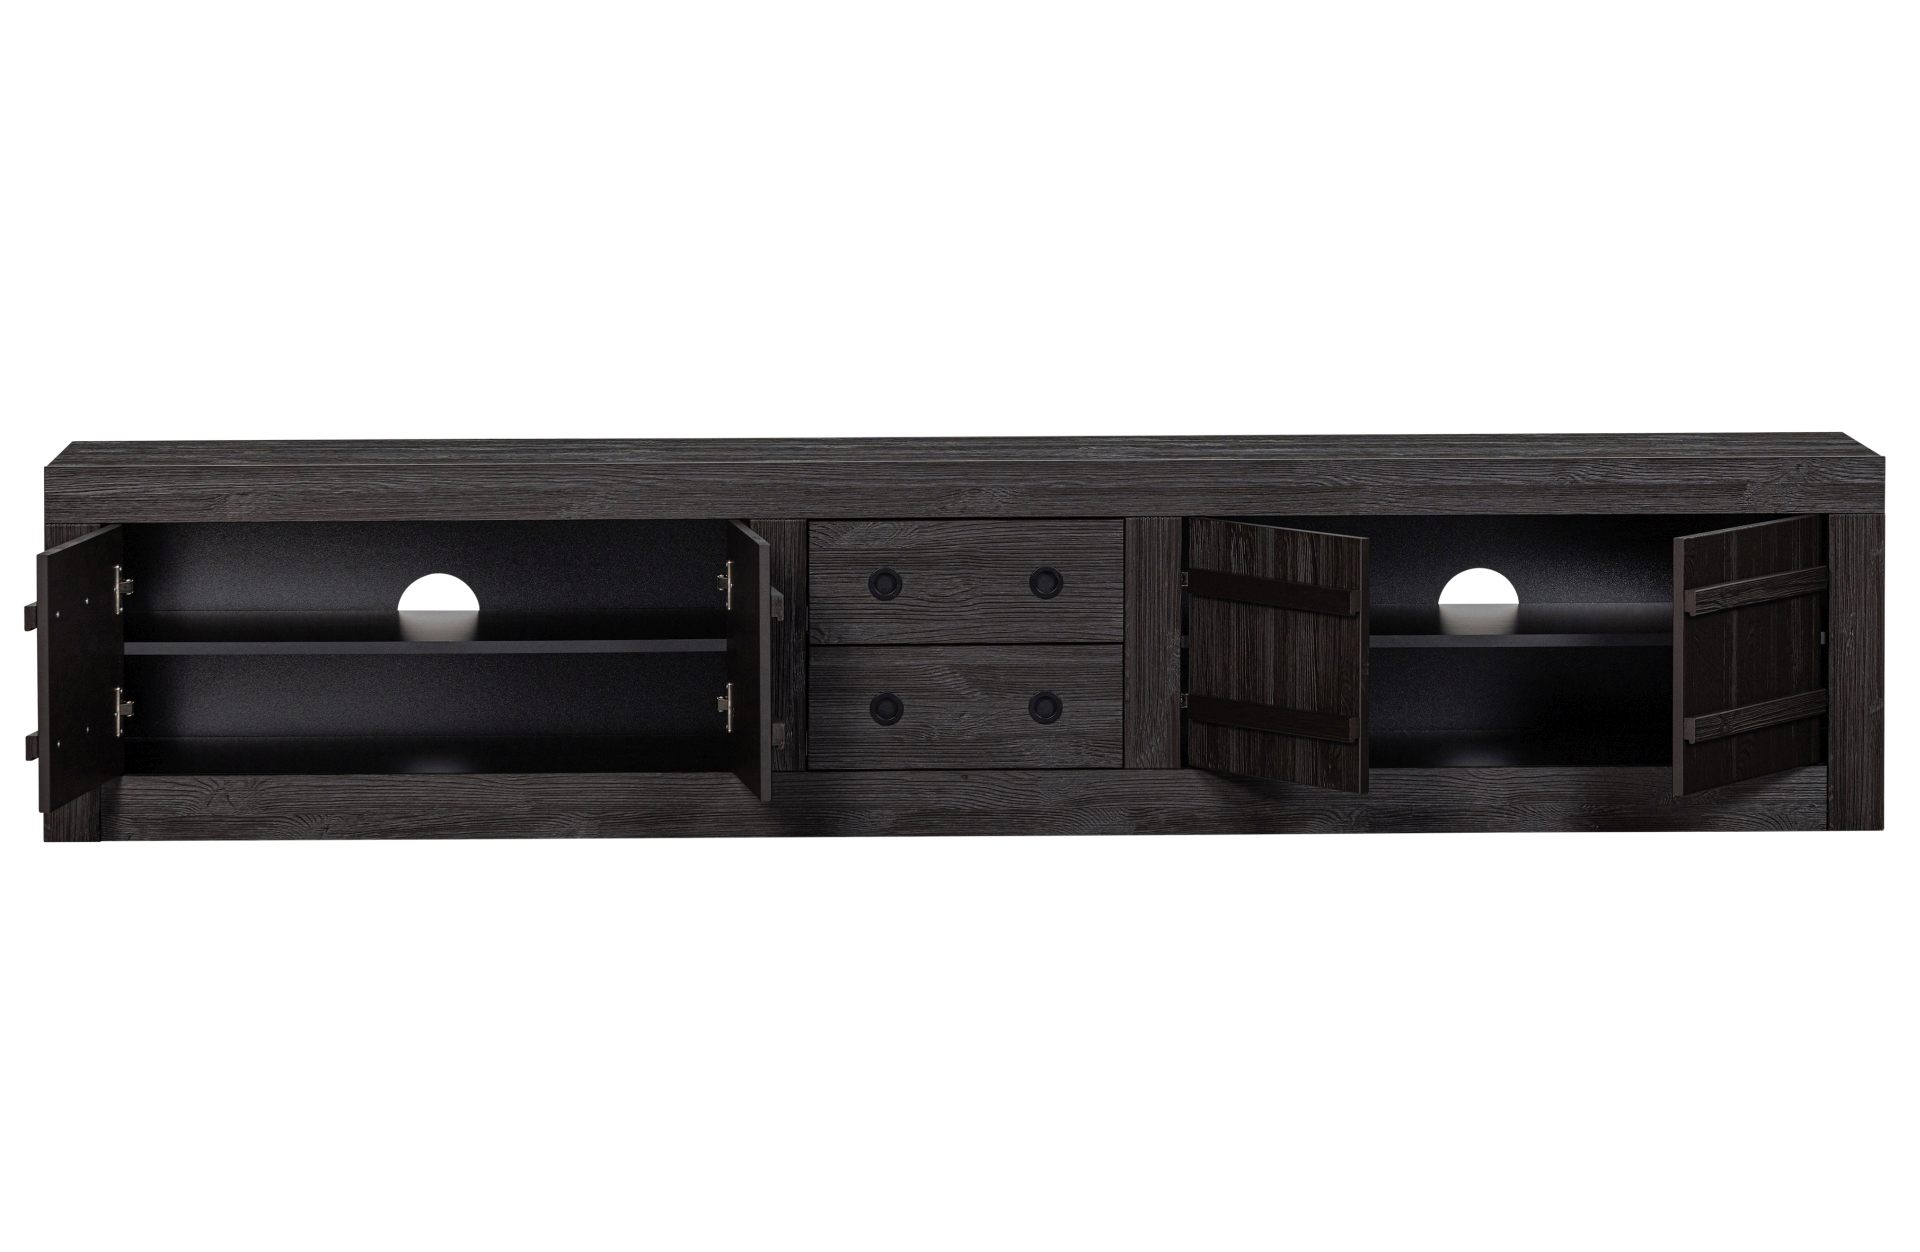 Das TV-Board Hiku überzeugt mit seinem moderndem Design. Gefertigt wurde es aus Kiefernholz, welches einen dunkelbraunen Farbton besitzt. Das TV-Board verfügt über vier Türen und zwei Schubladen. Die Breite beträgt 220 cm.